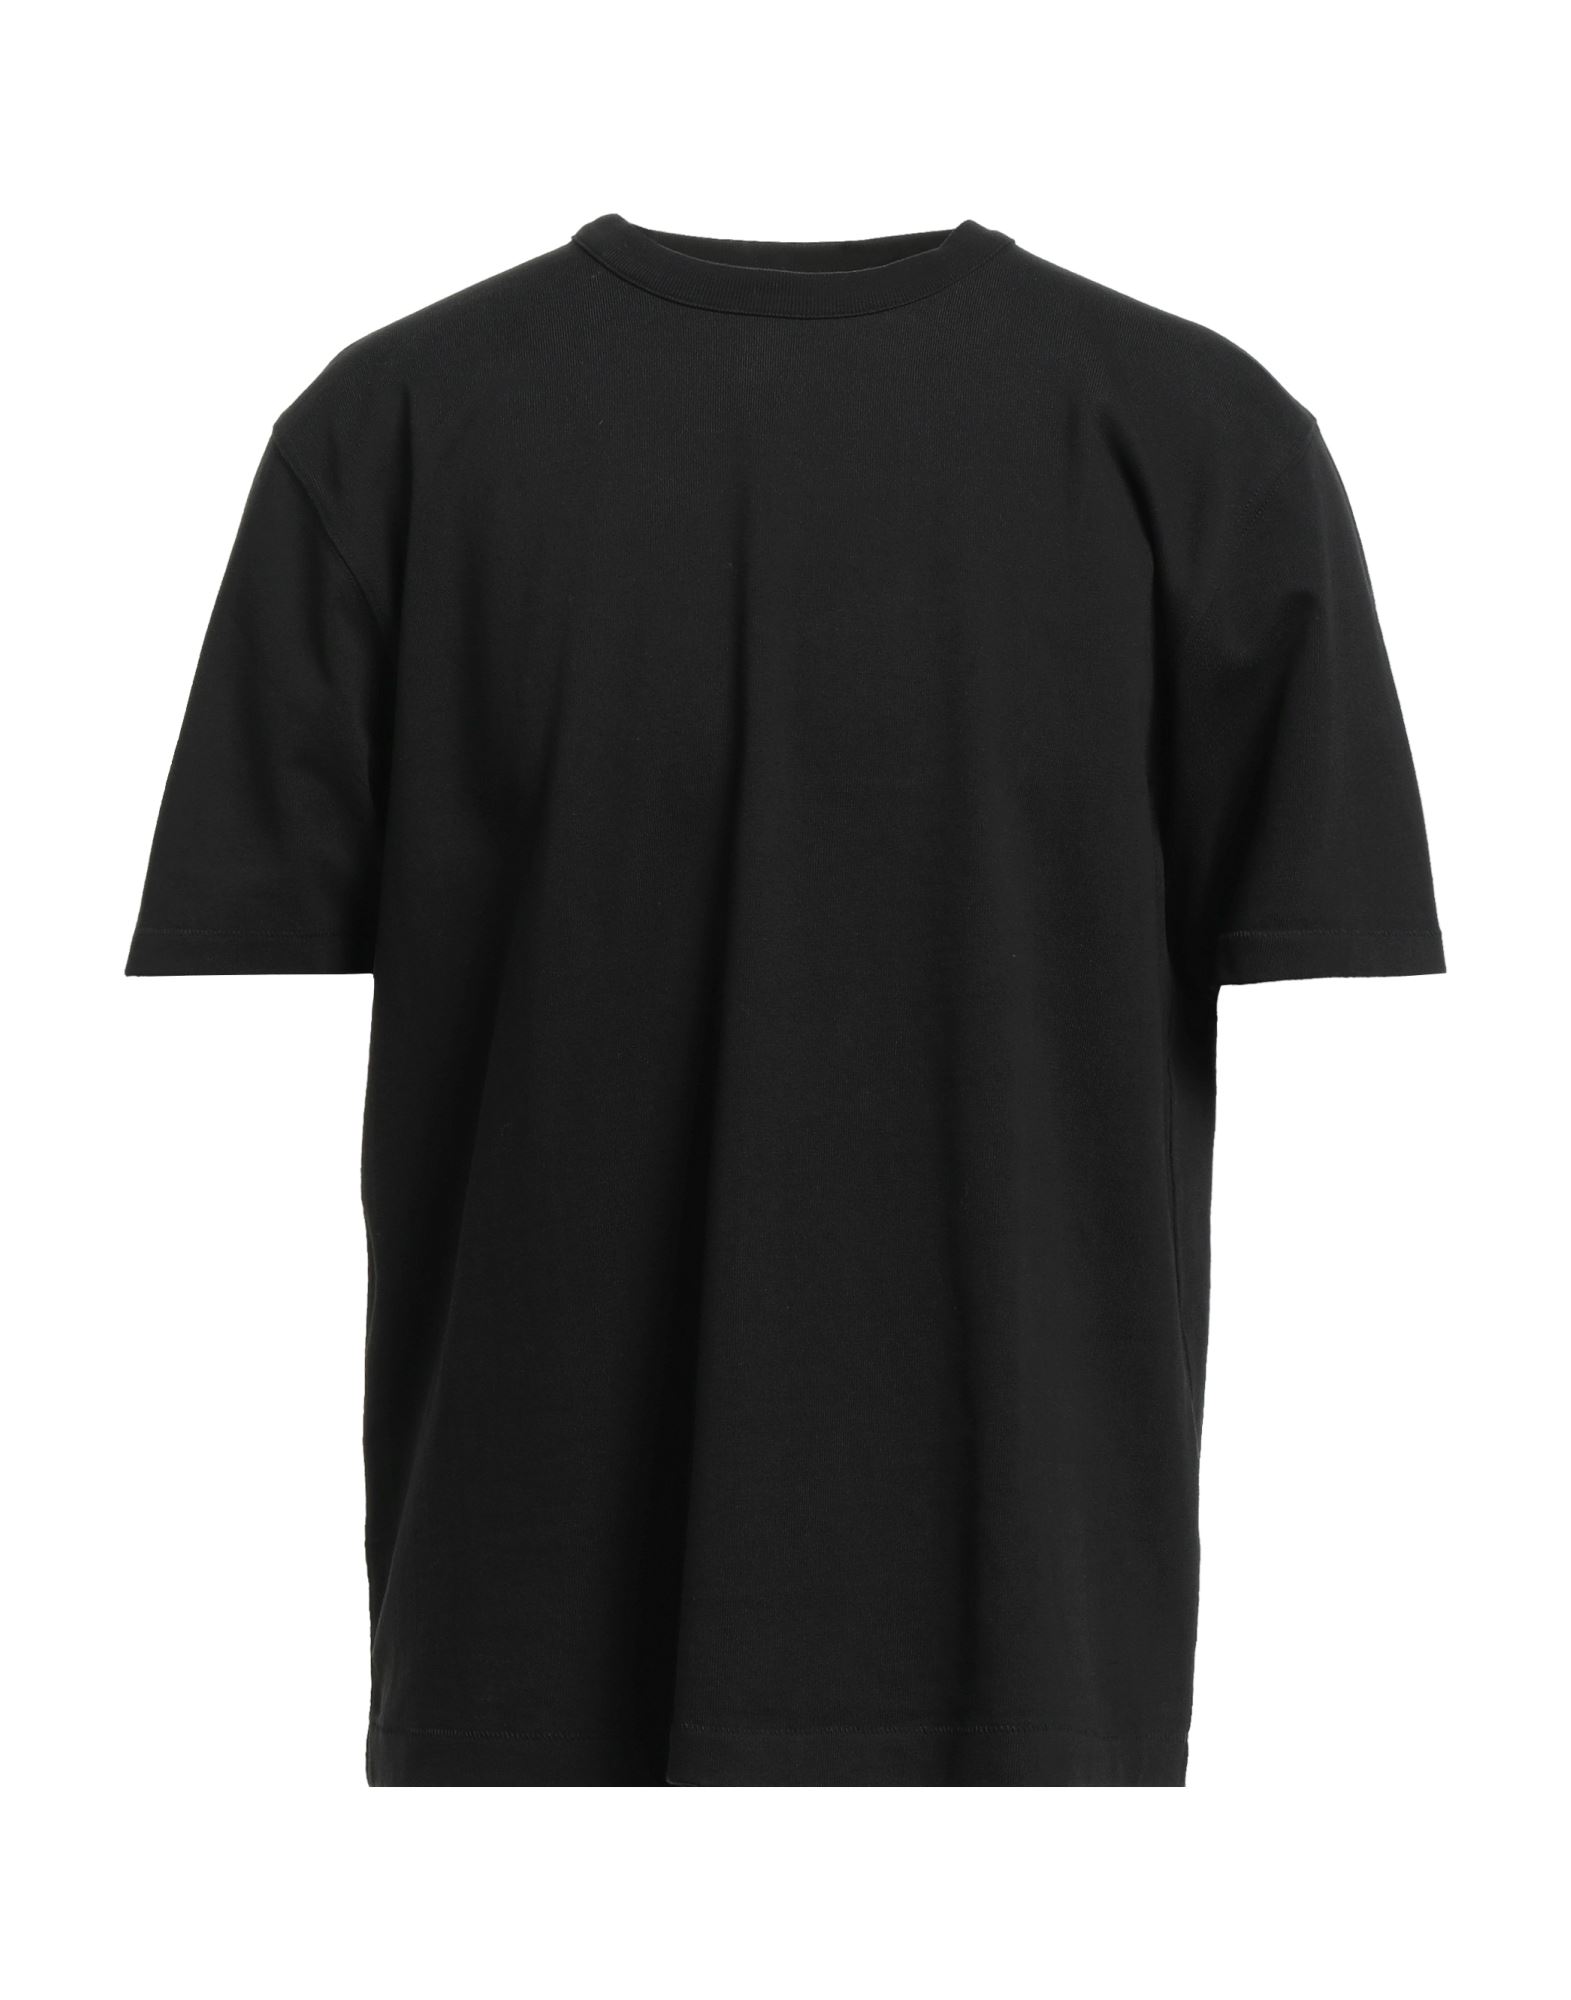 Heron Preston X Calvin Klein T-shirts In Black